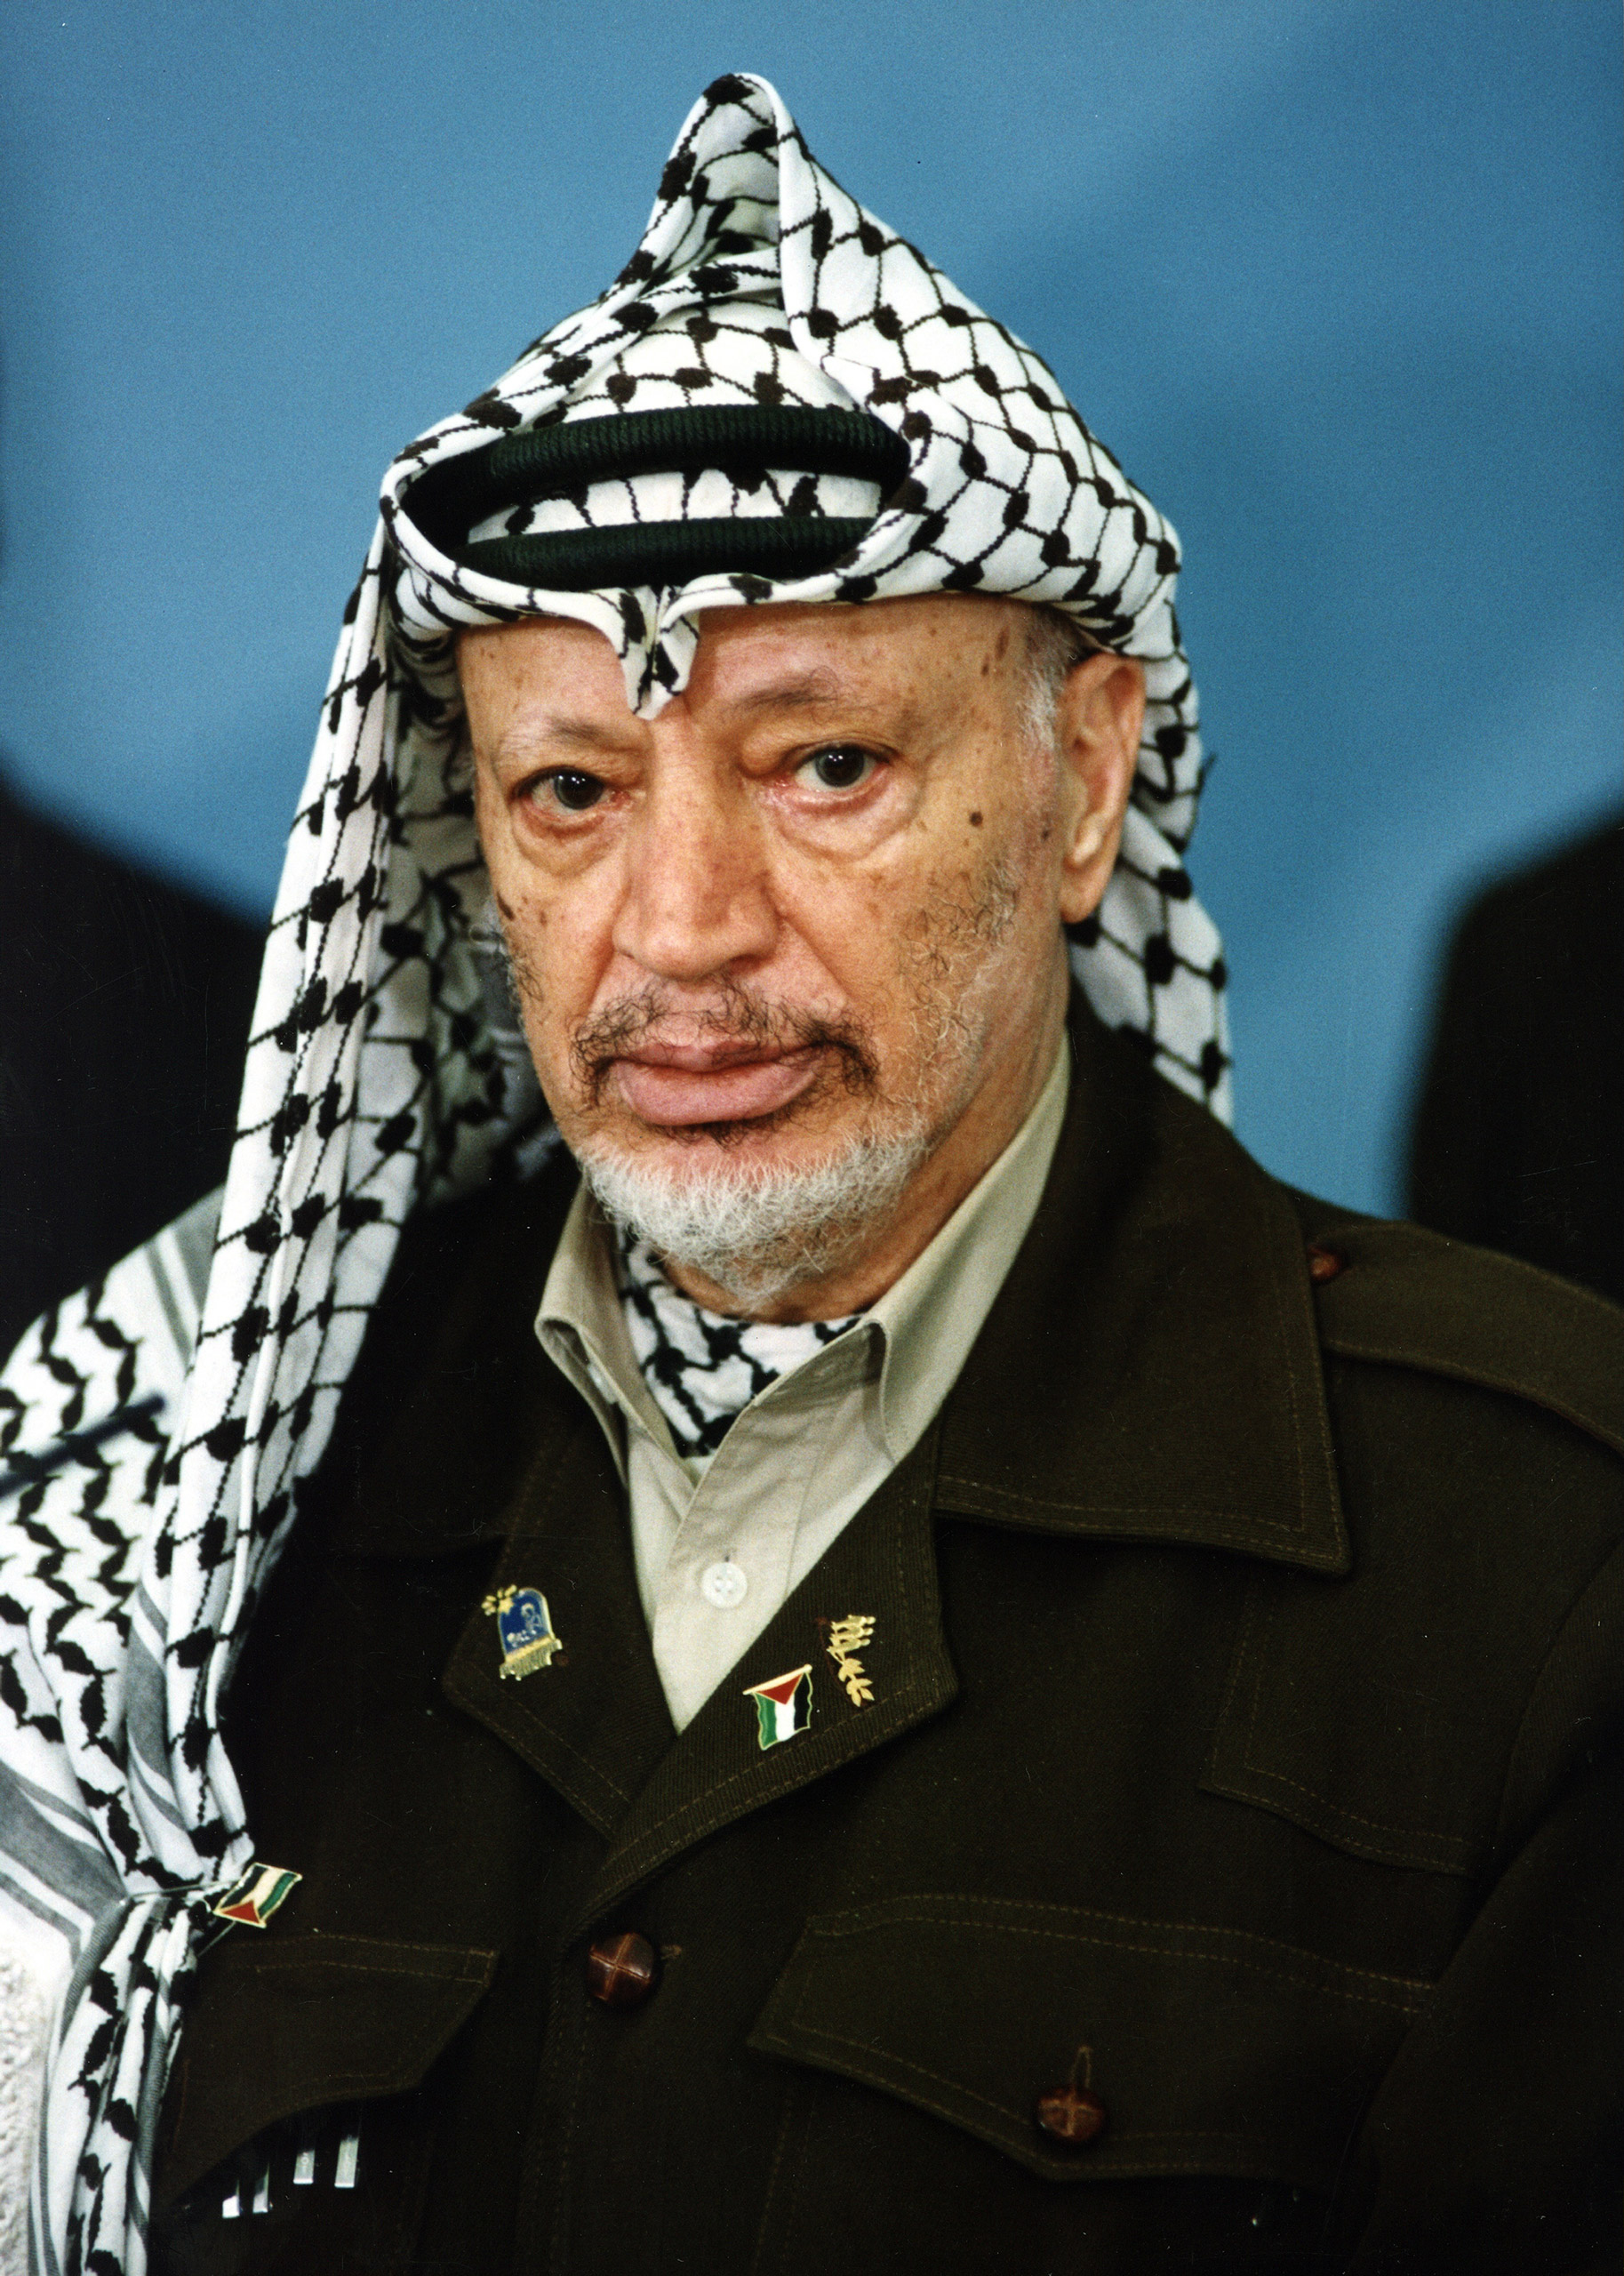 (GERMANY OUT) Arafat, Yassir *24.08.1929-11.11.2004+Politiker, Terrorist, PalaestinaVorsitzender der PLO 1969-2004Praesident der palaest. Autonomiegebiete 1996-2004Friedensnobelpreis 1994- Halbportrait (Photo by P/F/H/ullstein bild via Getty Images)